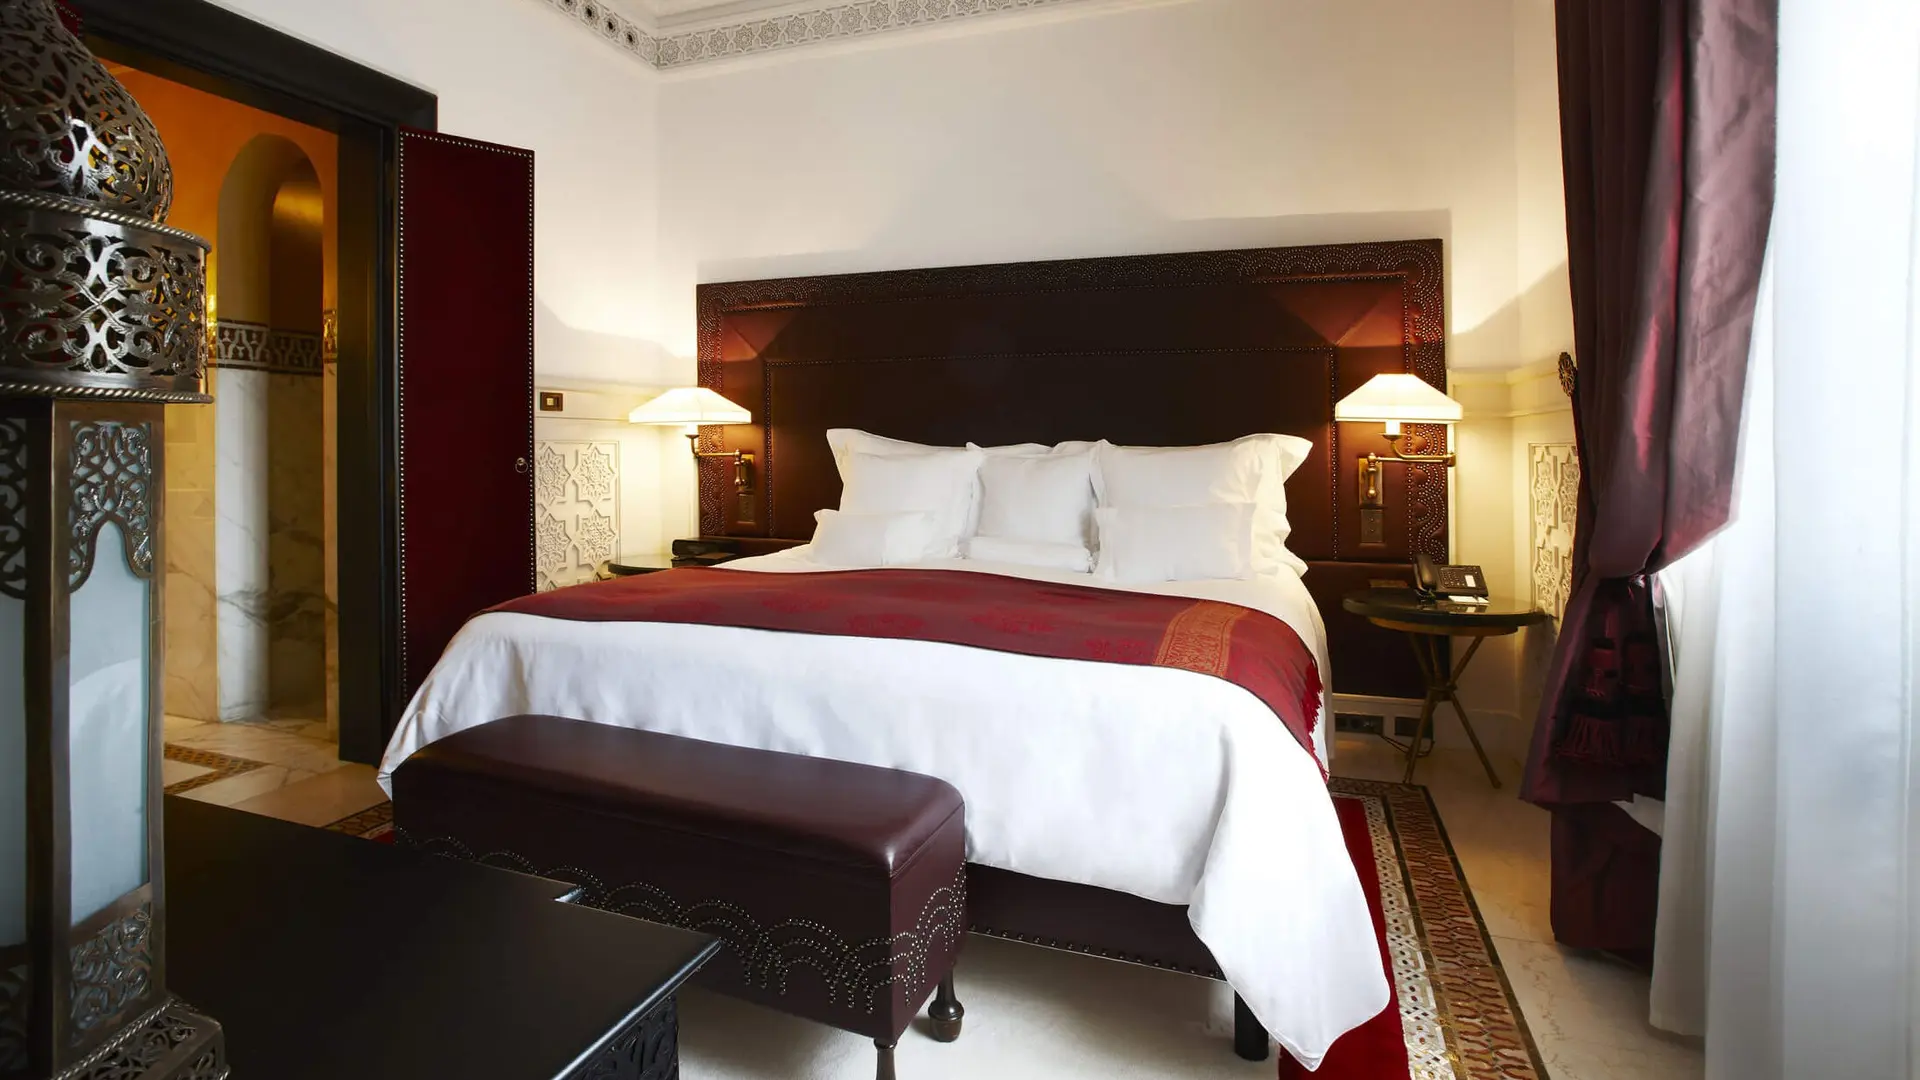 Hotel review Accommodation' - La Mamounia - 6